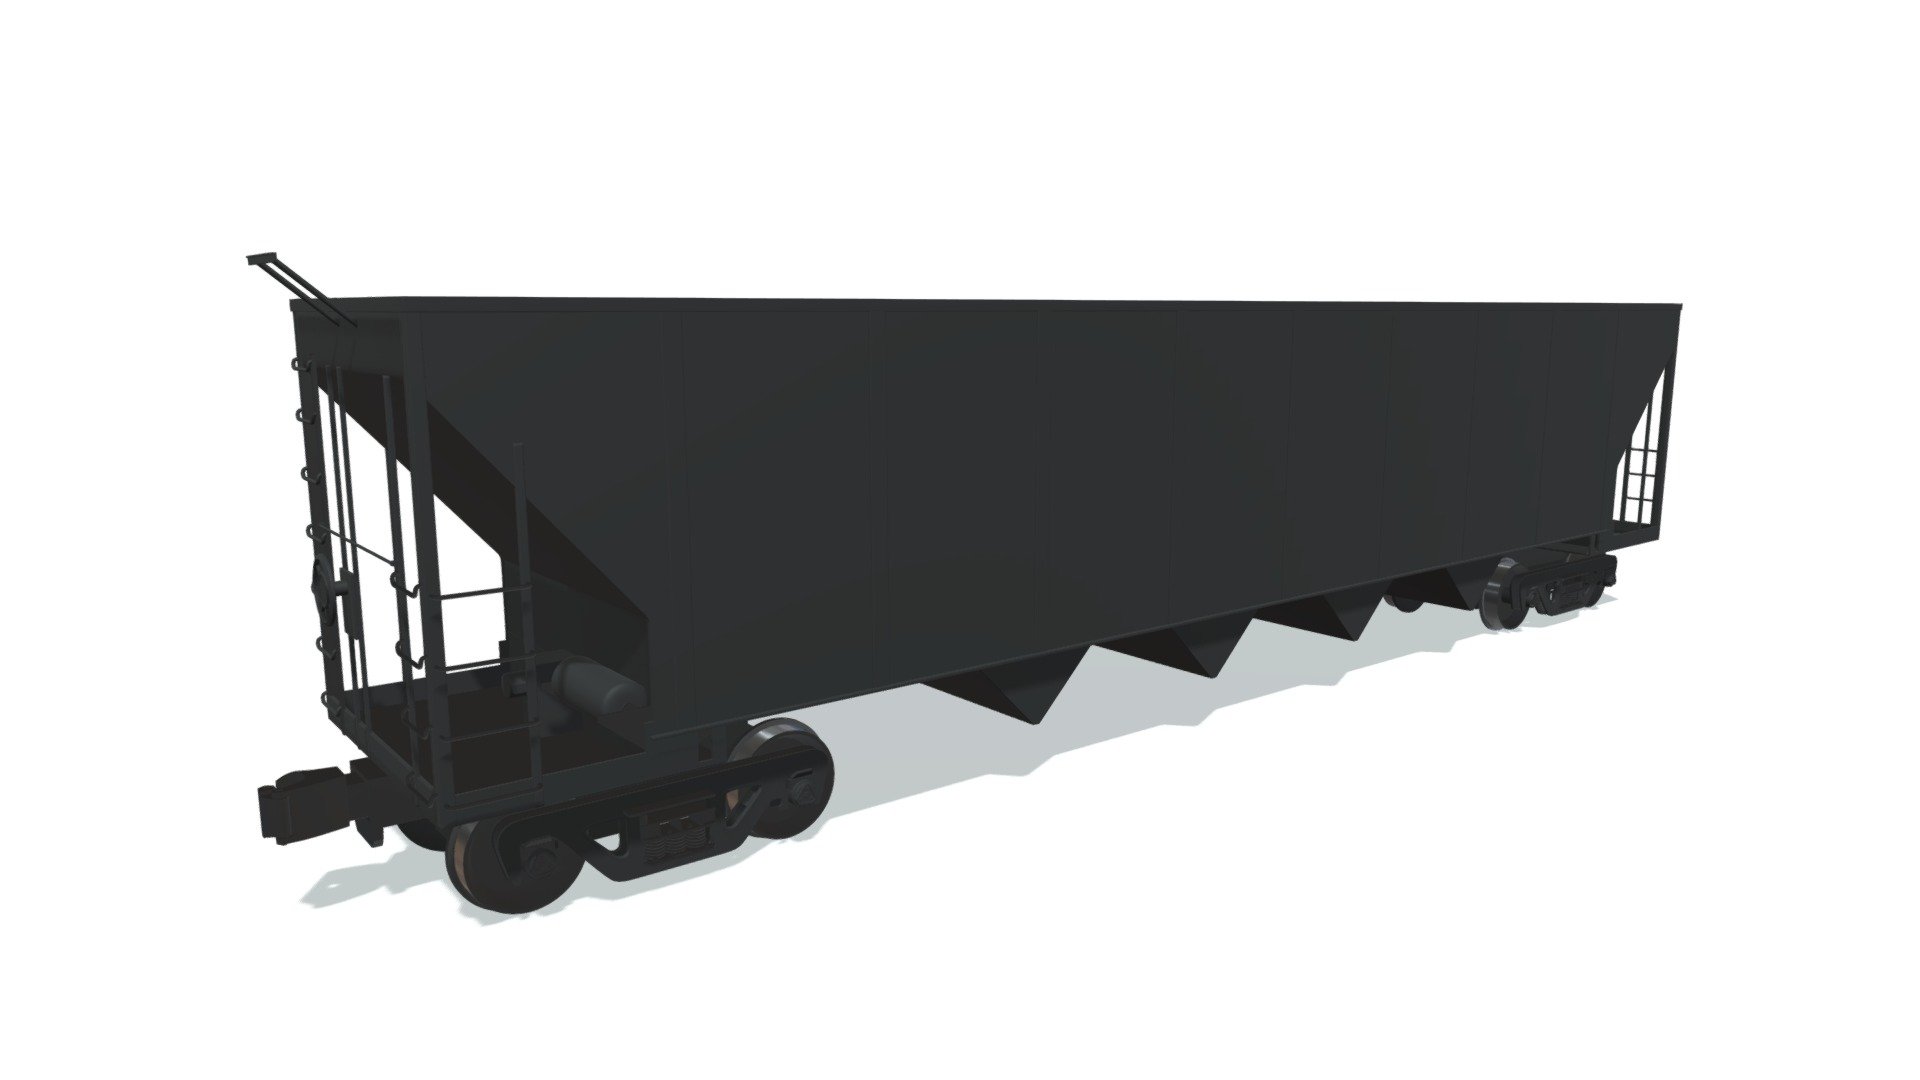 High quality 3d model of railroad hopper car 3d model